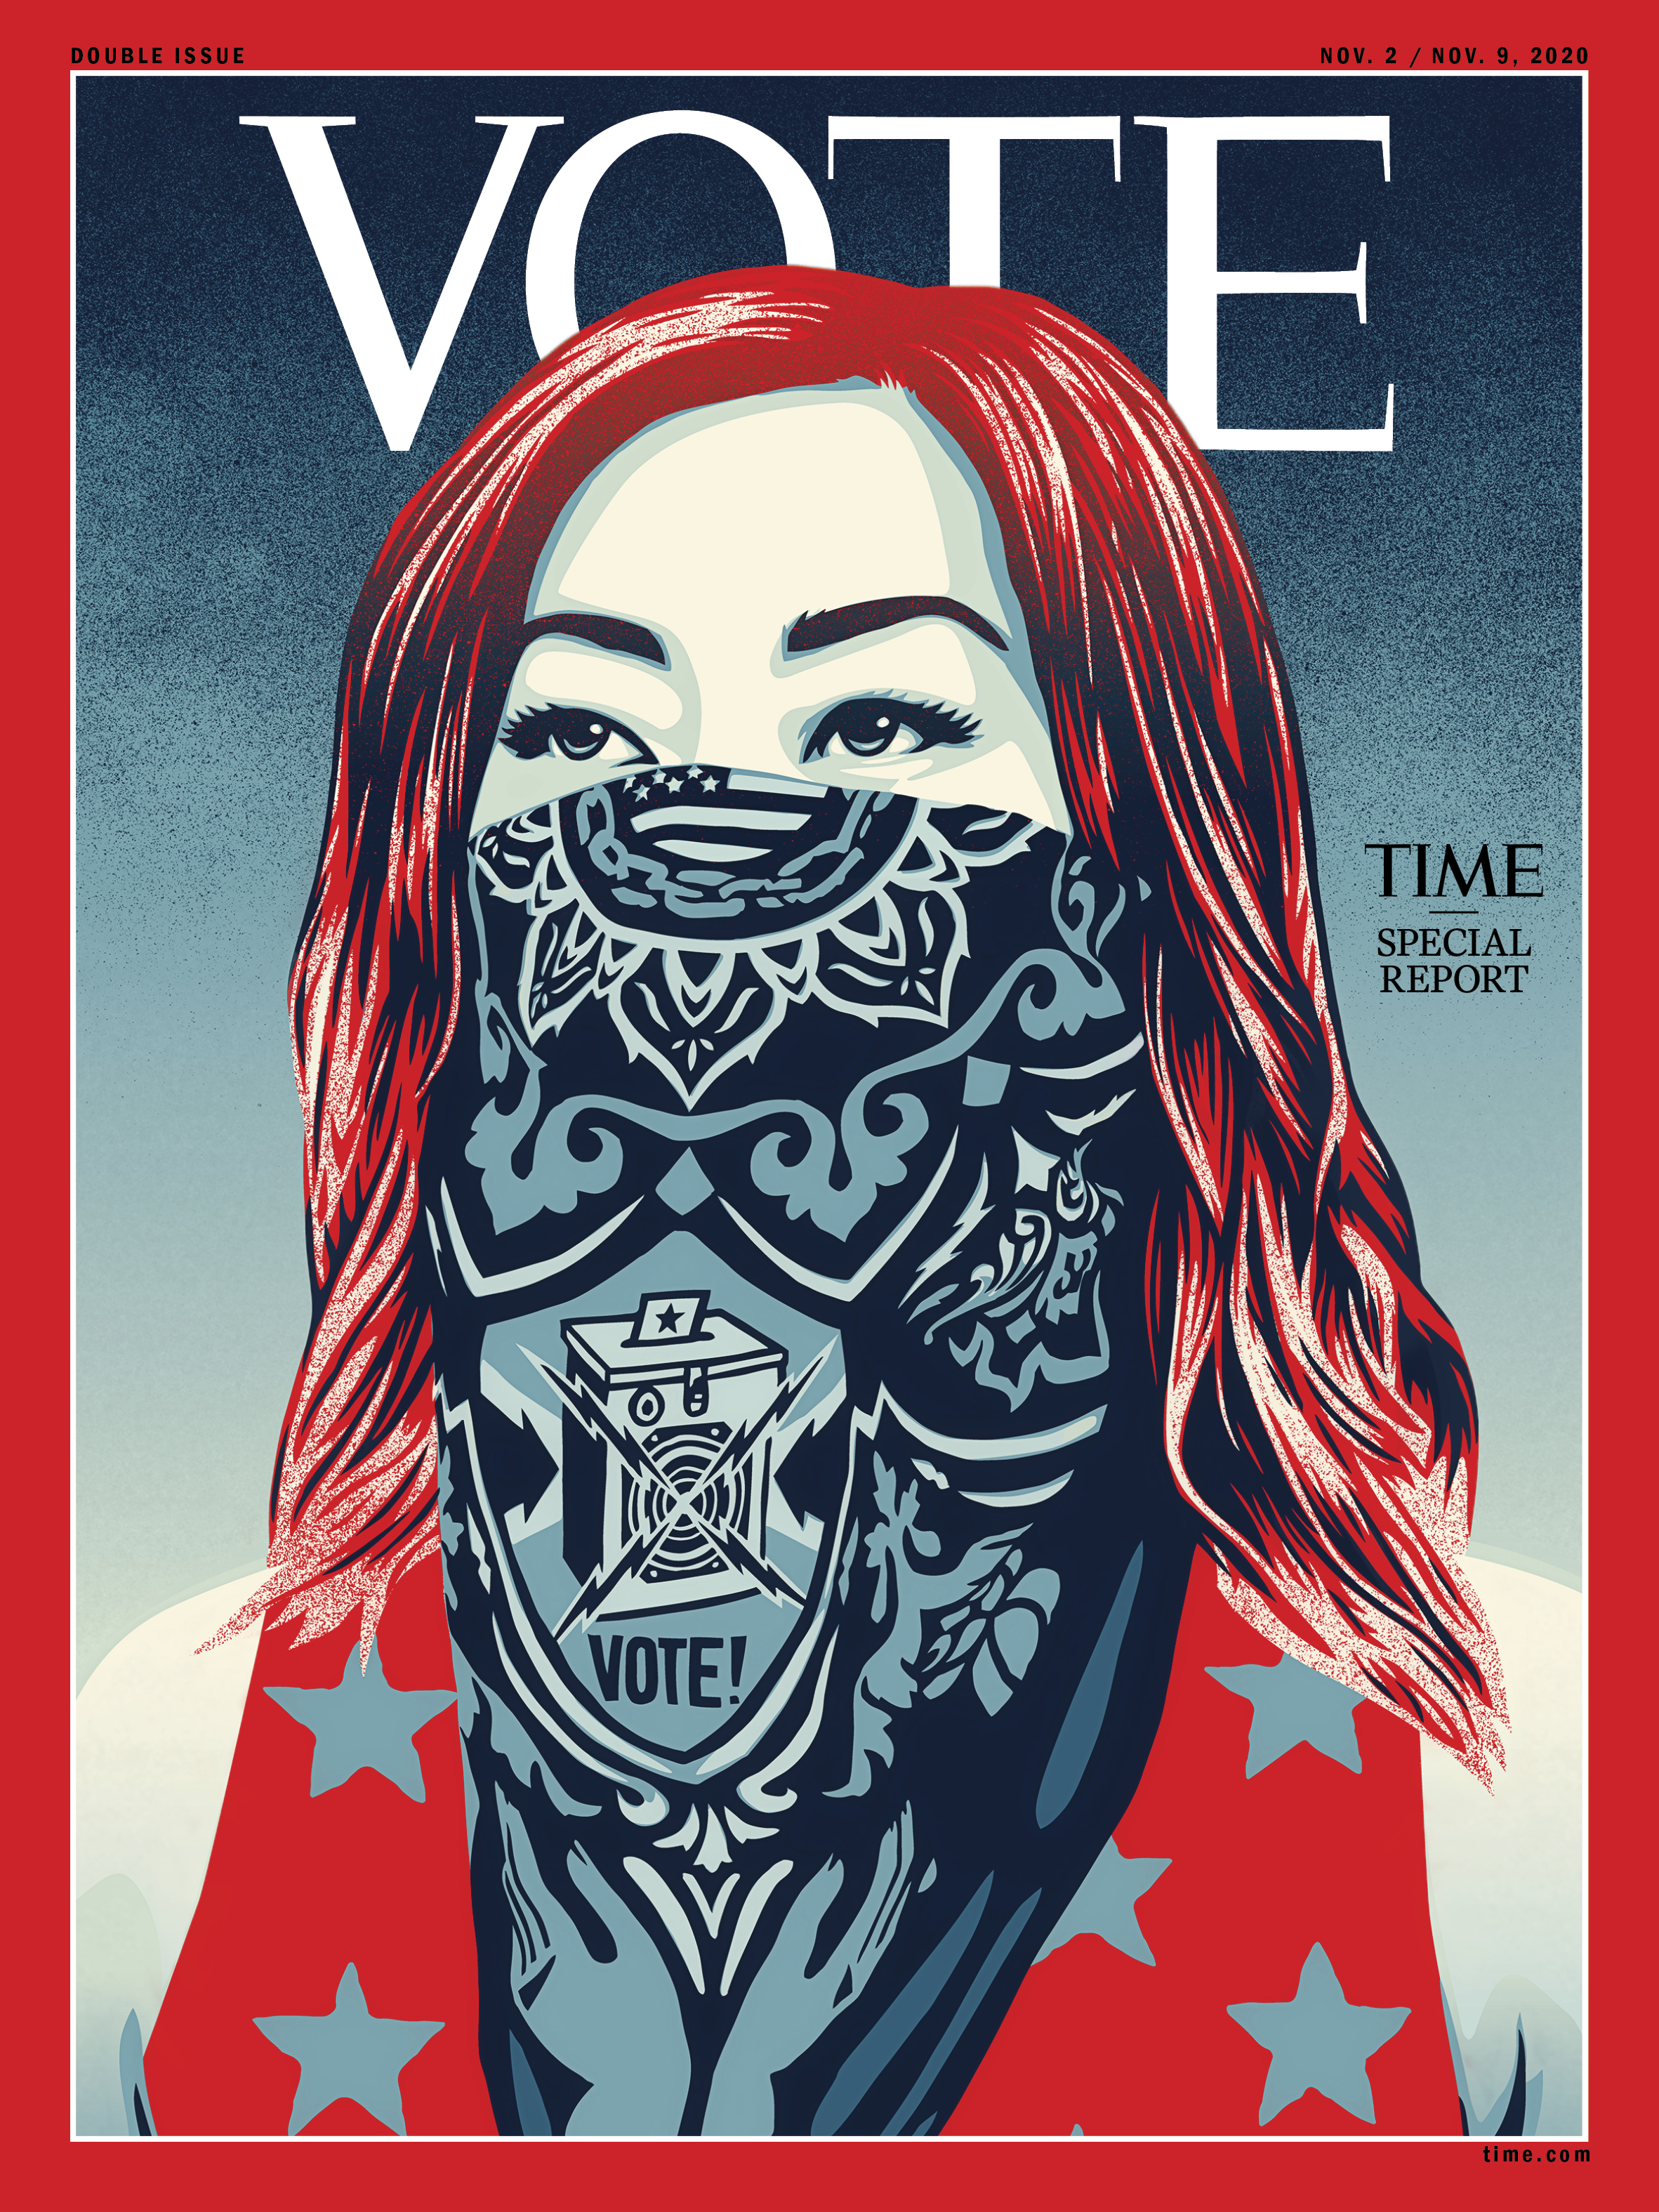 Time vote. Обложка Таймс. Журнал Таймс обложка 2020. Обложка журнала time. Обложка журнала тайм 2020.